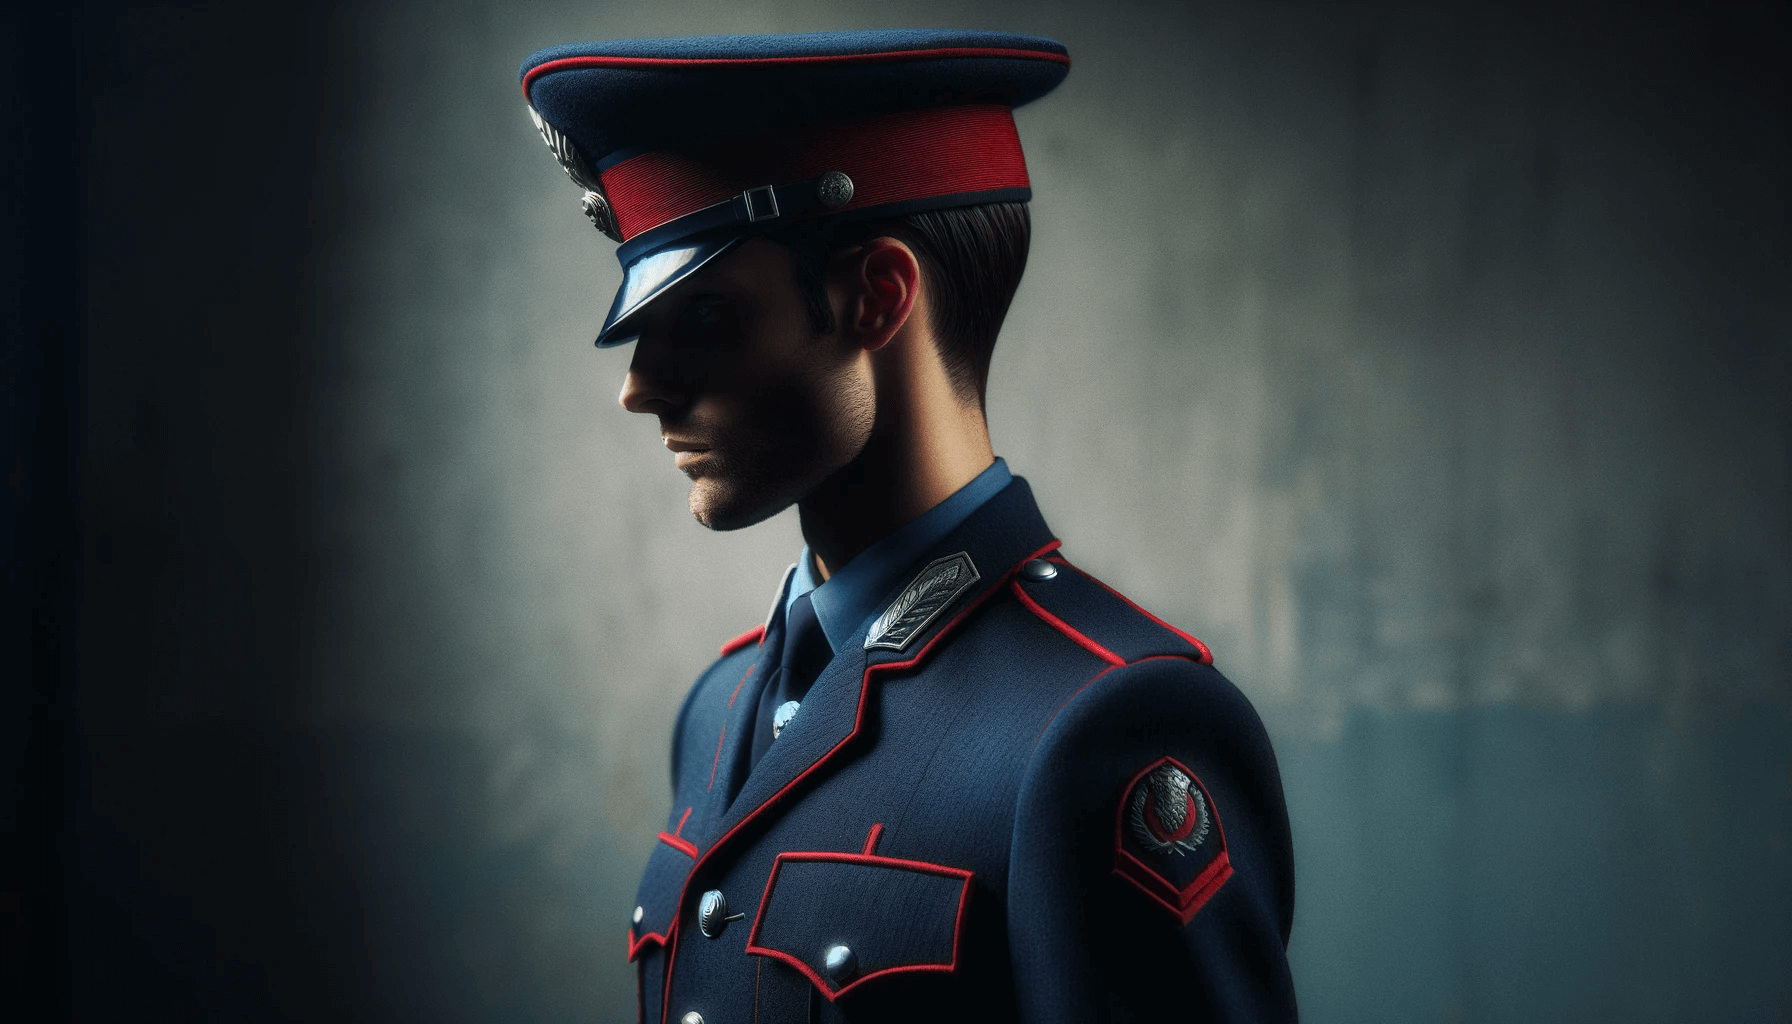  ‣ adn24 reggio calabria | escluso ingiustamente dal concorso carabinieri: dovrà ripetere il colloquio finale